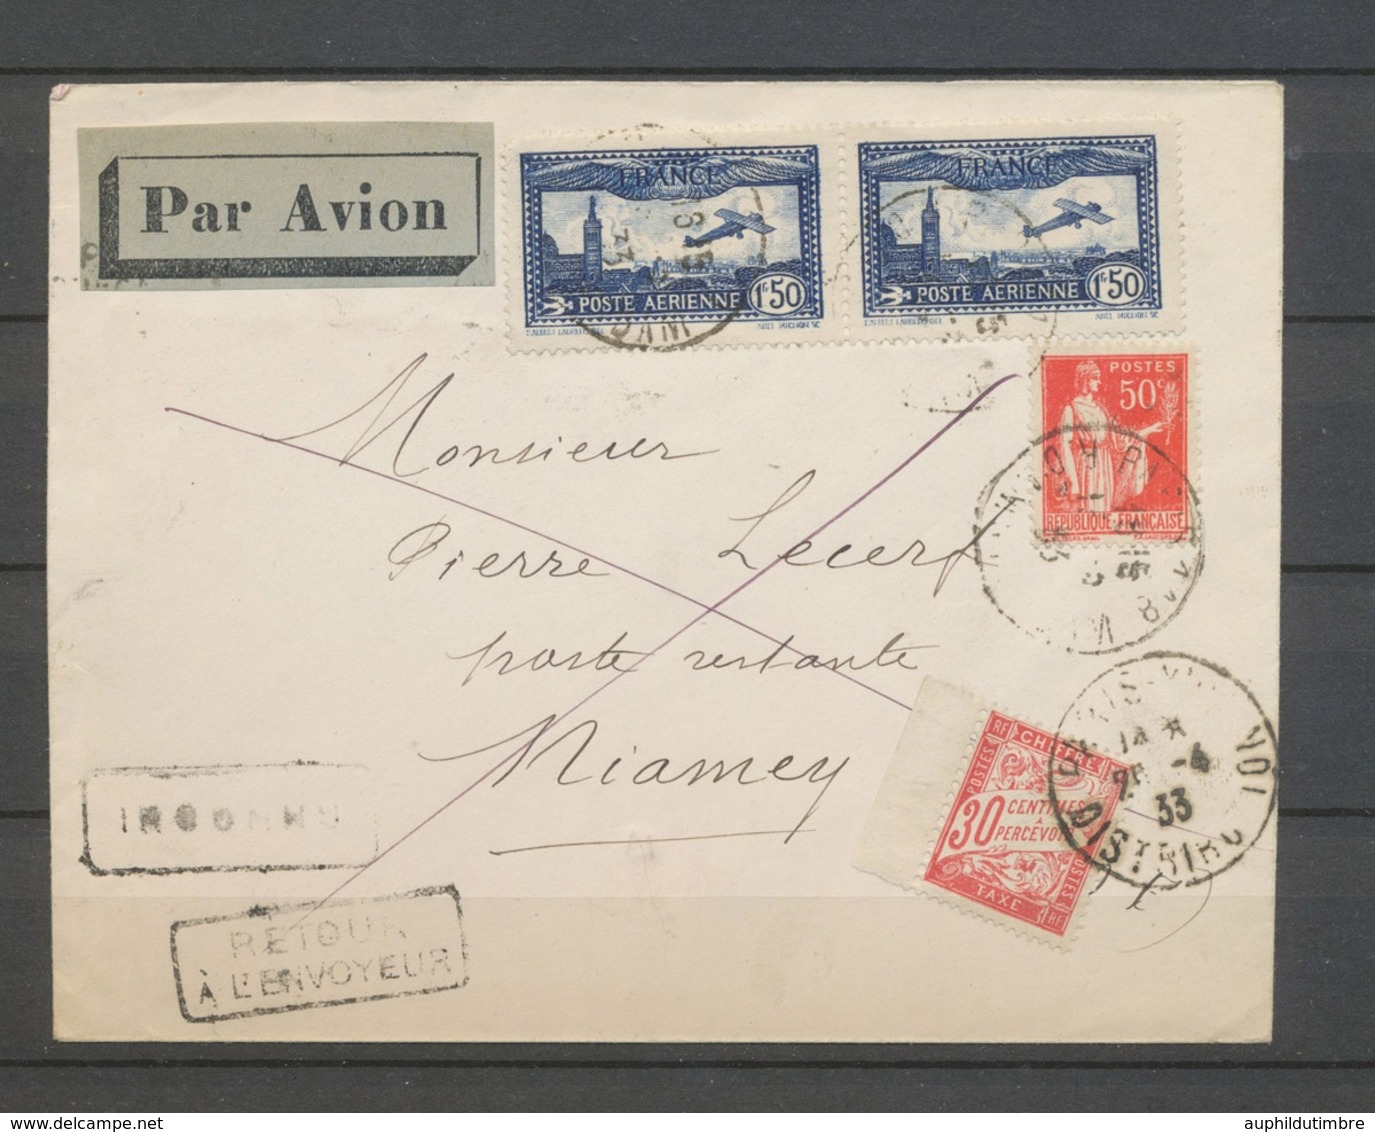 1933 Env. PARIS-NIAMEY, PA Paire N°6 + 50c, Taxe 30c, Arrivée NIAMEY, SUP X5182 - Collections